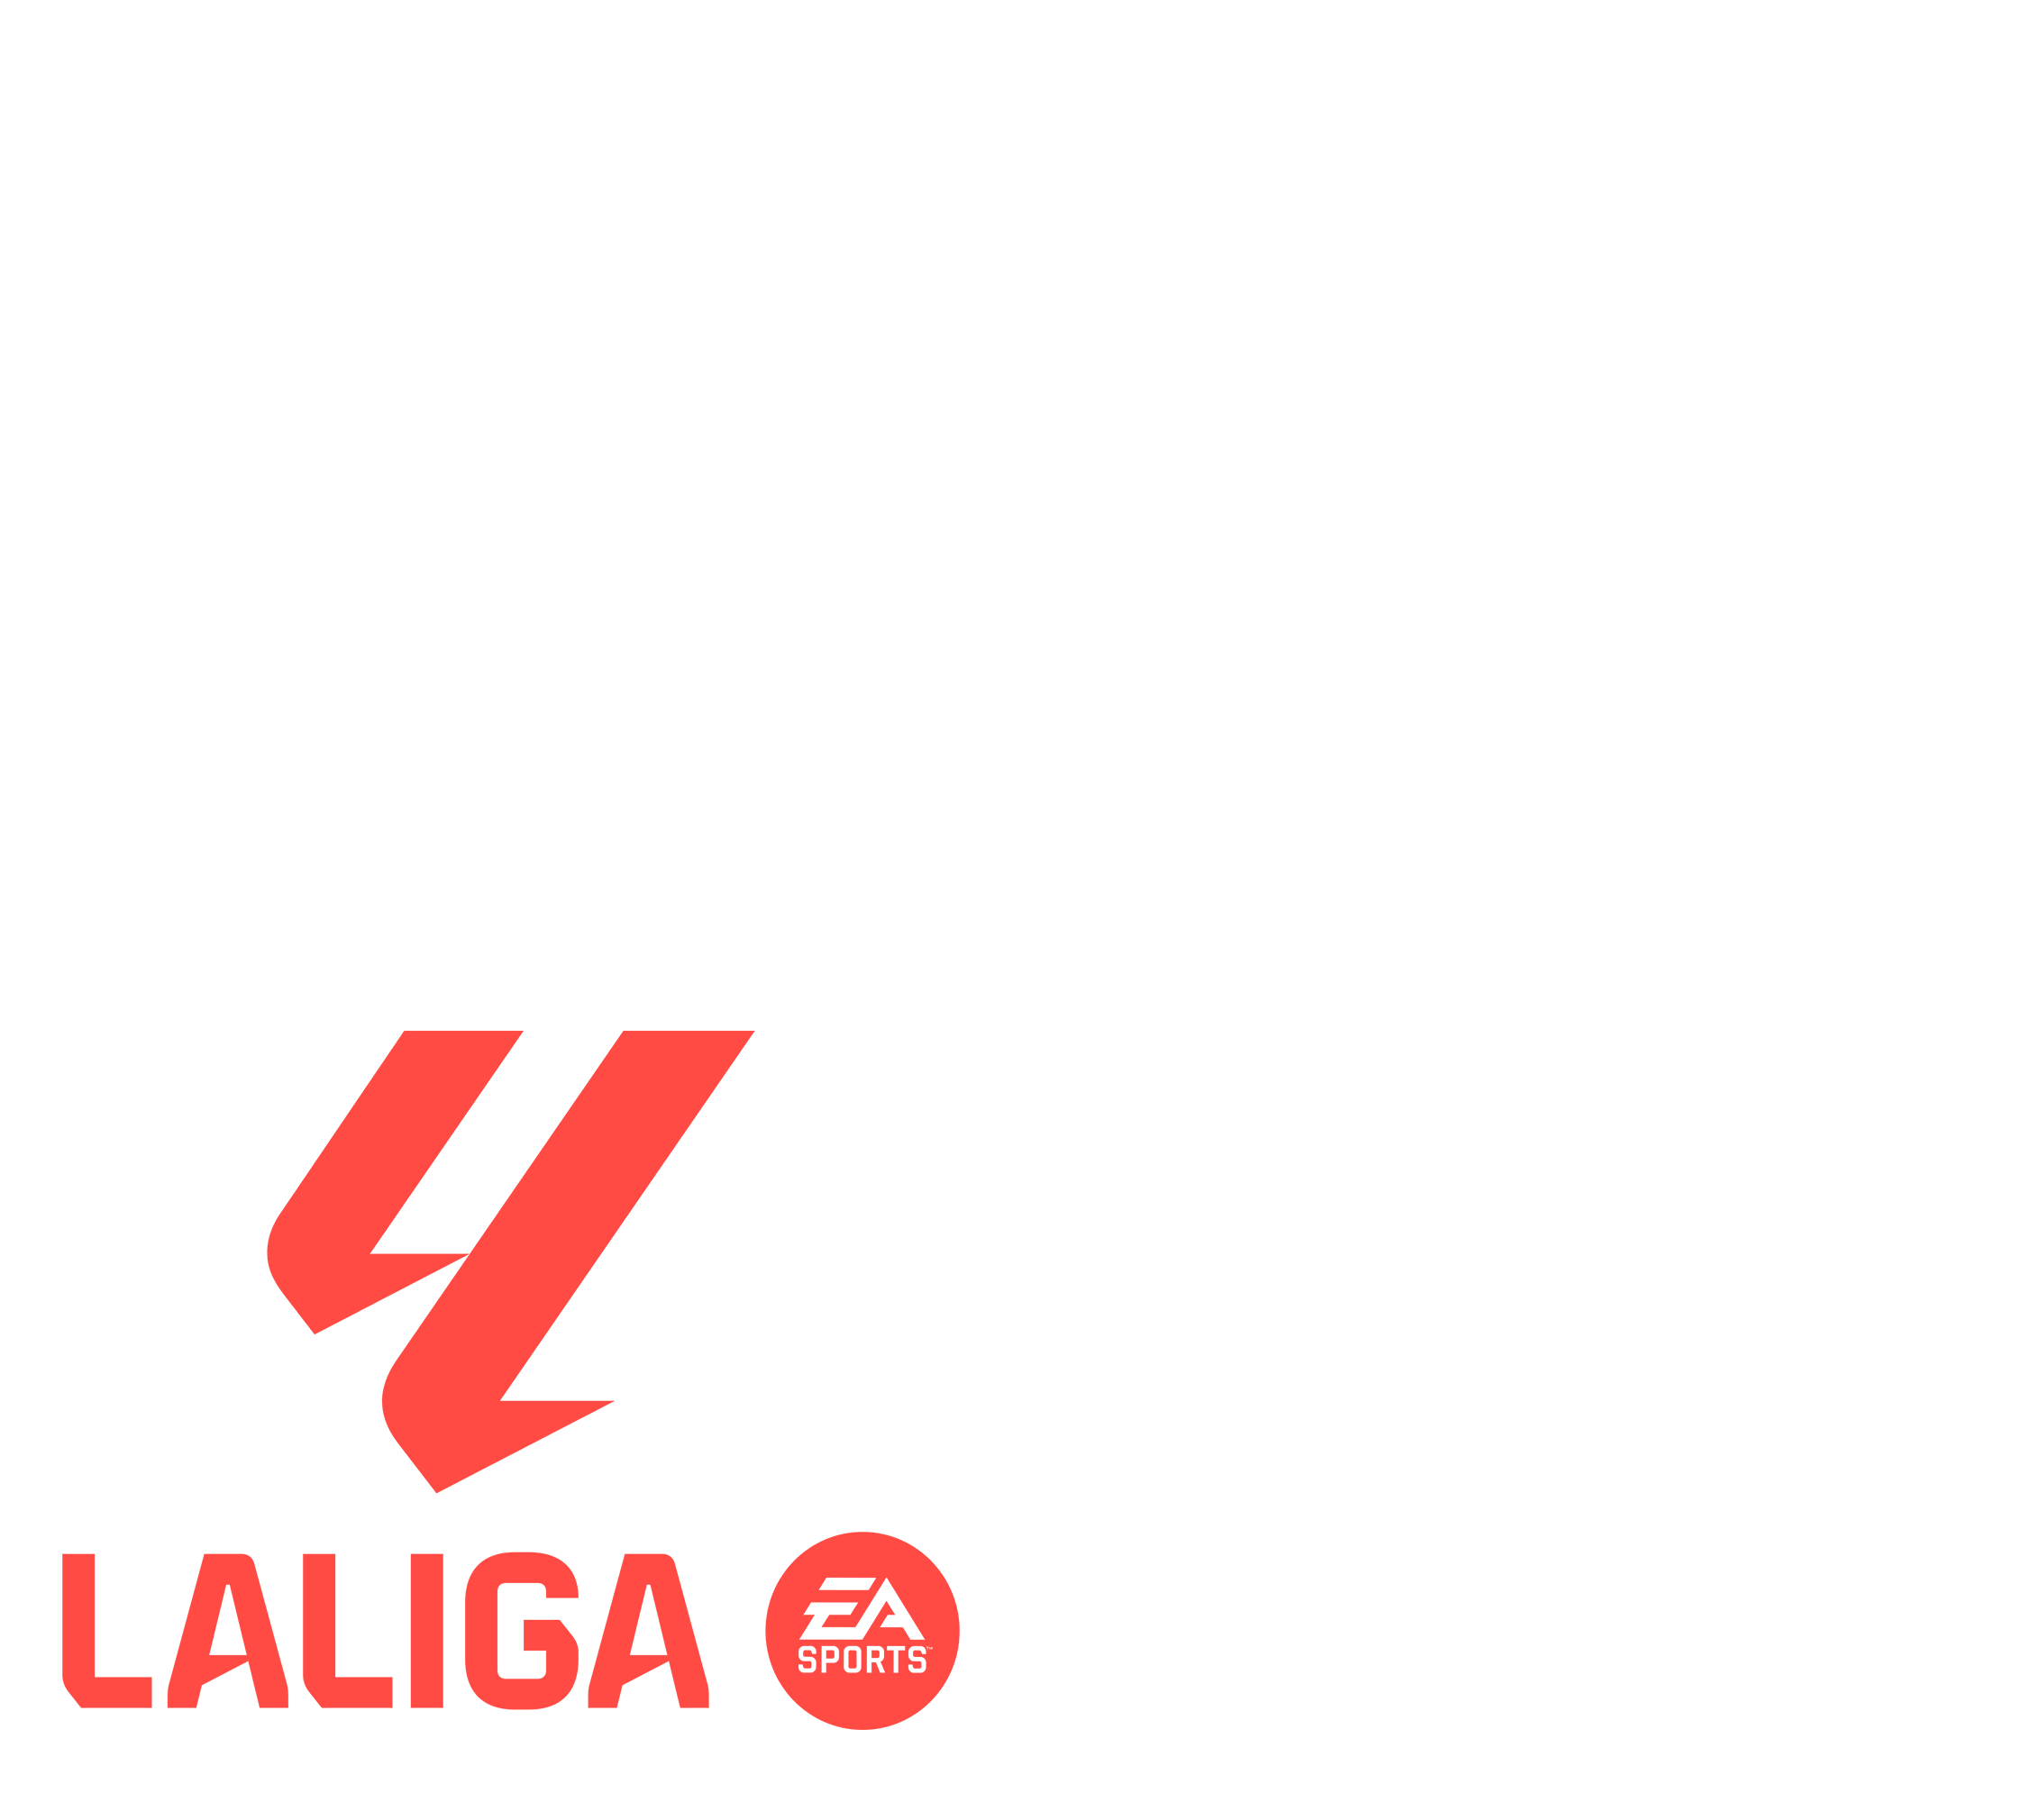 LaLiga EA SPORTS 2023/24